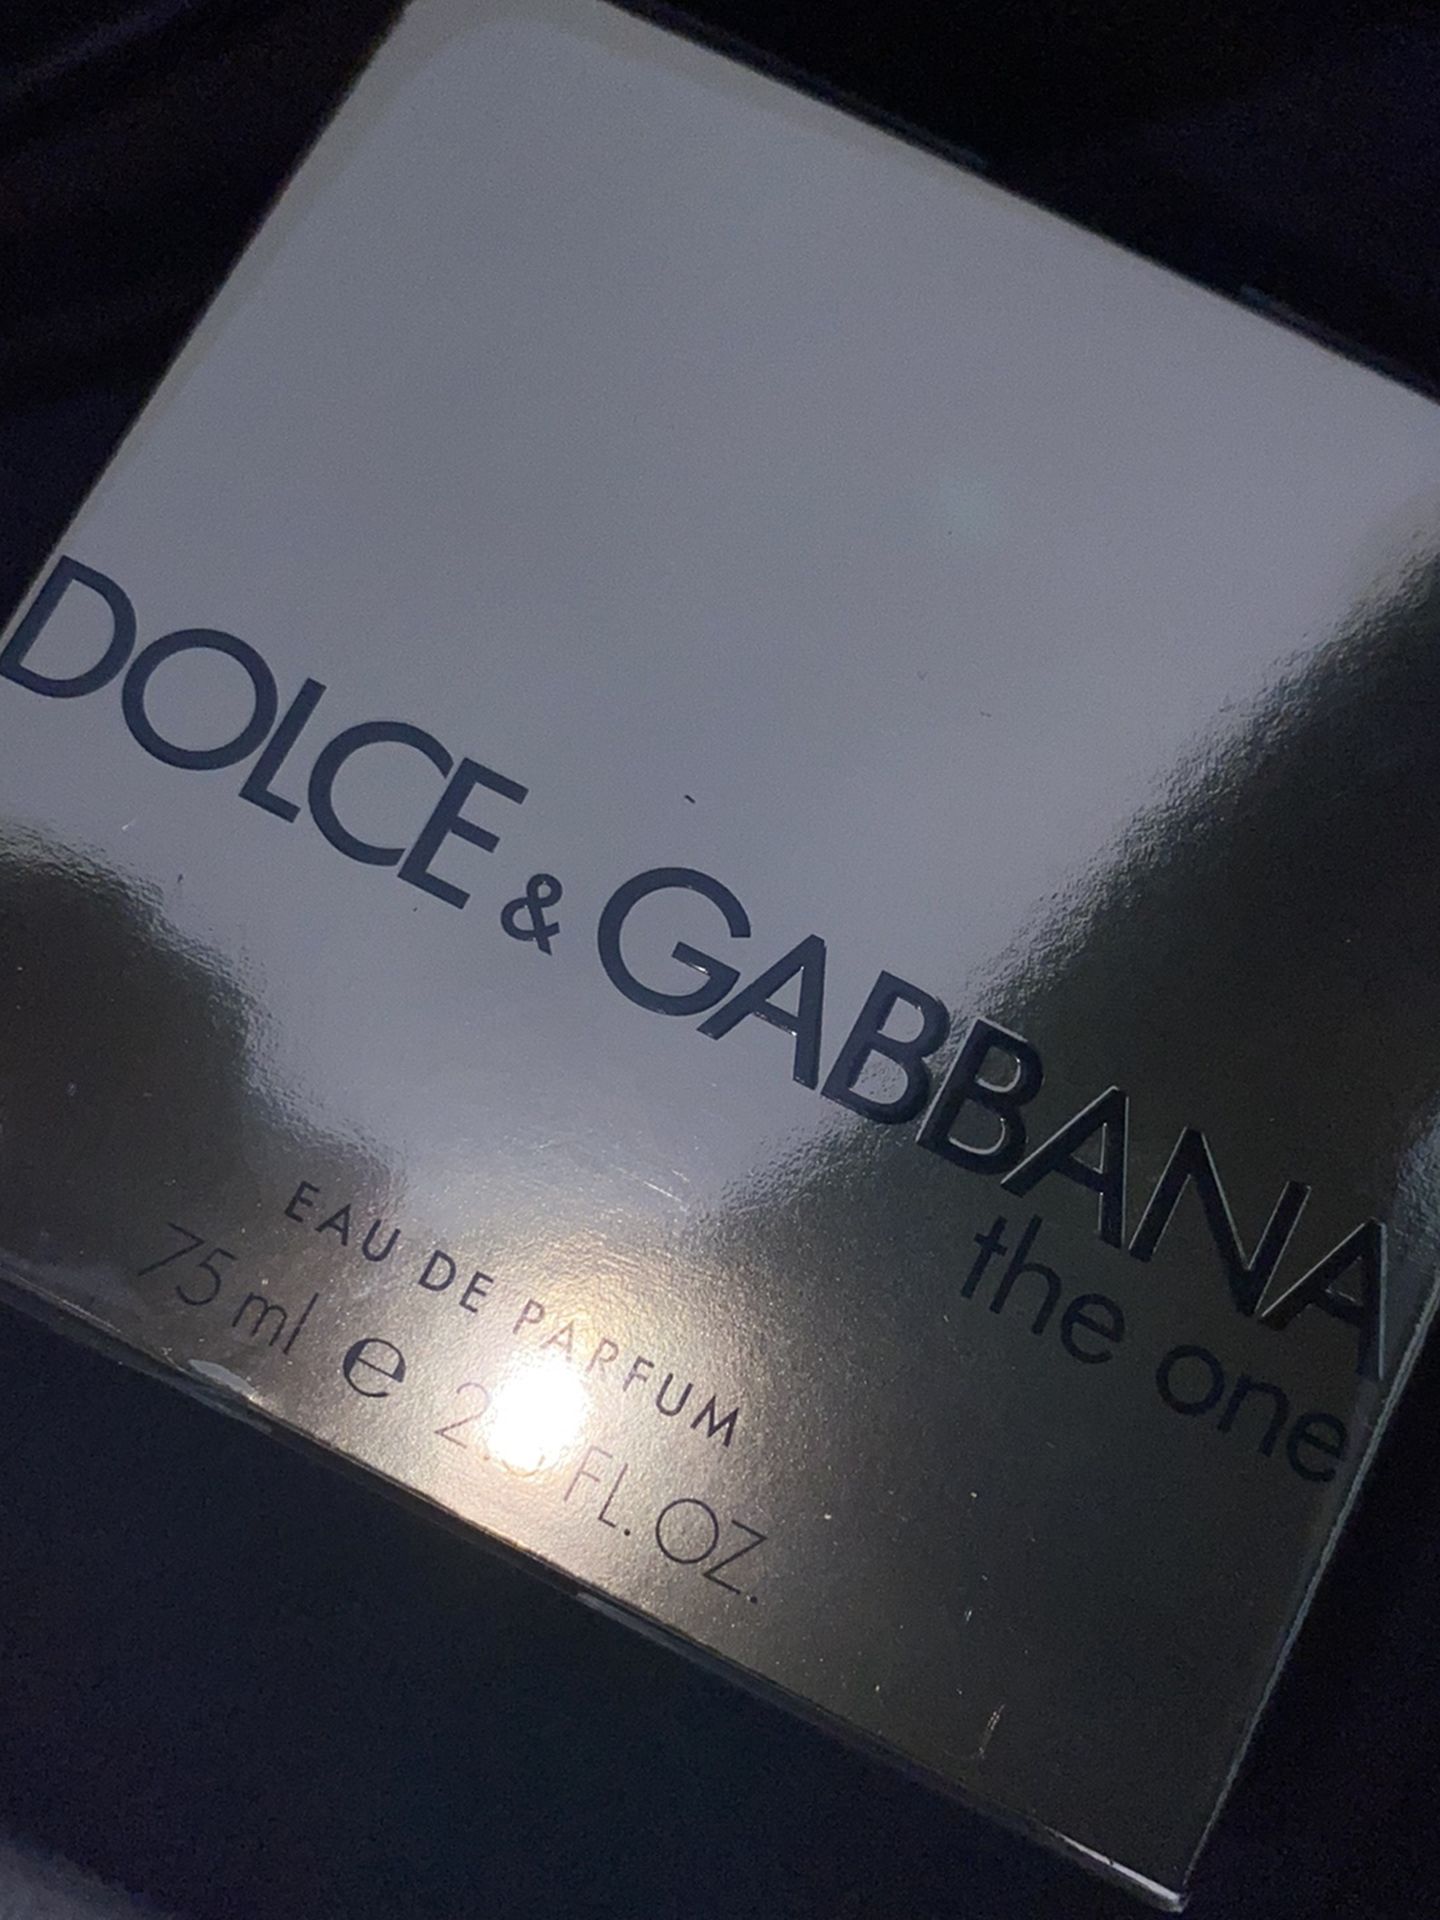 Dolce&Gabbana The One ☝️